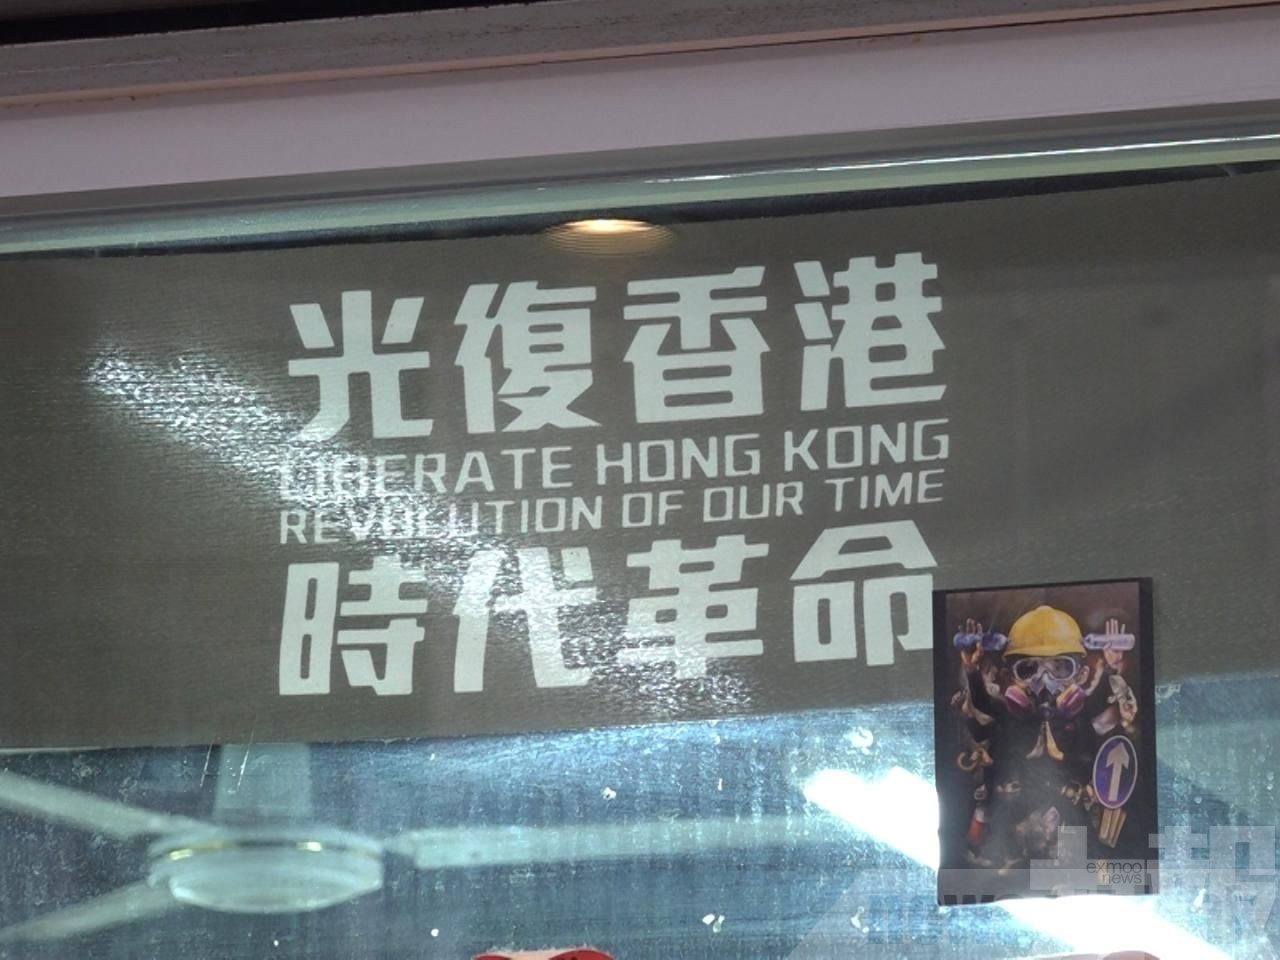 「光復香港 時代革命」有港獨含意